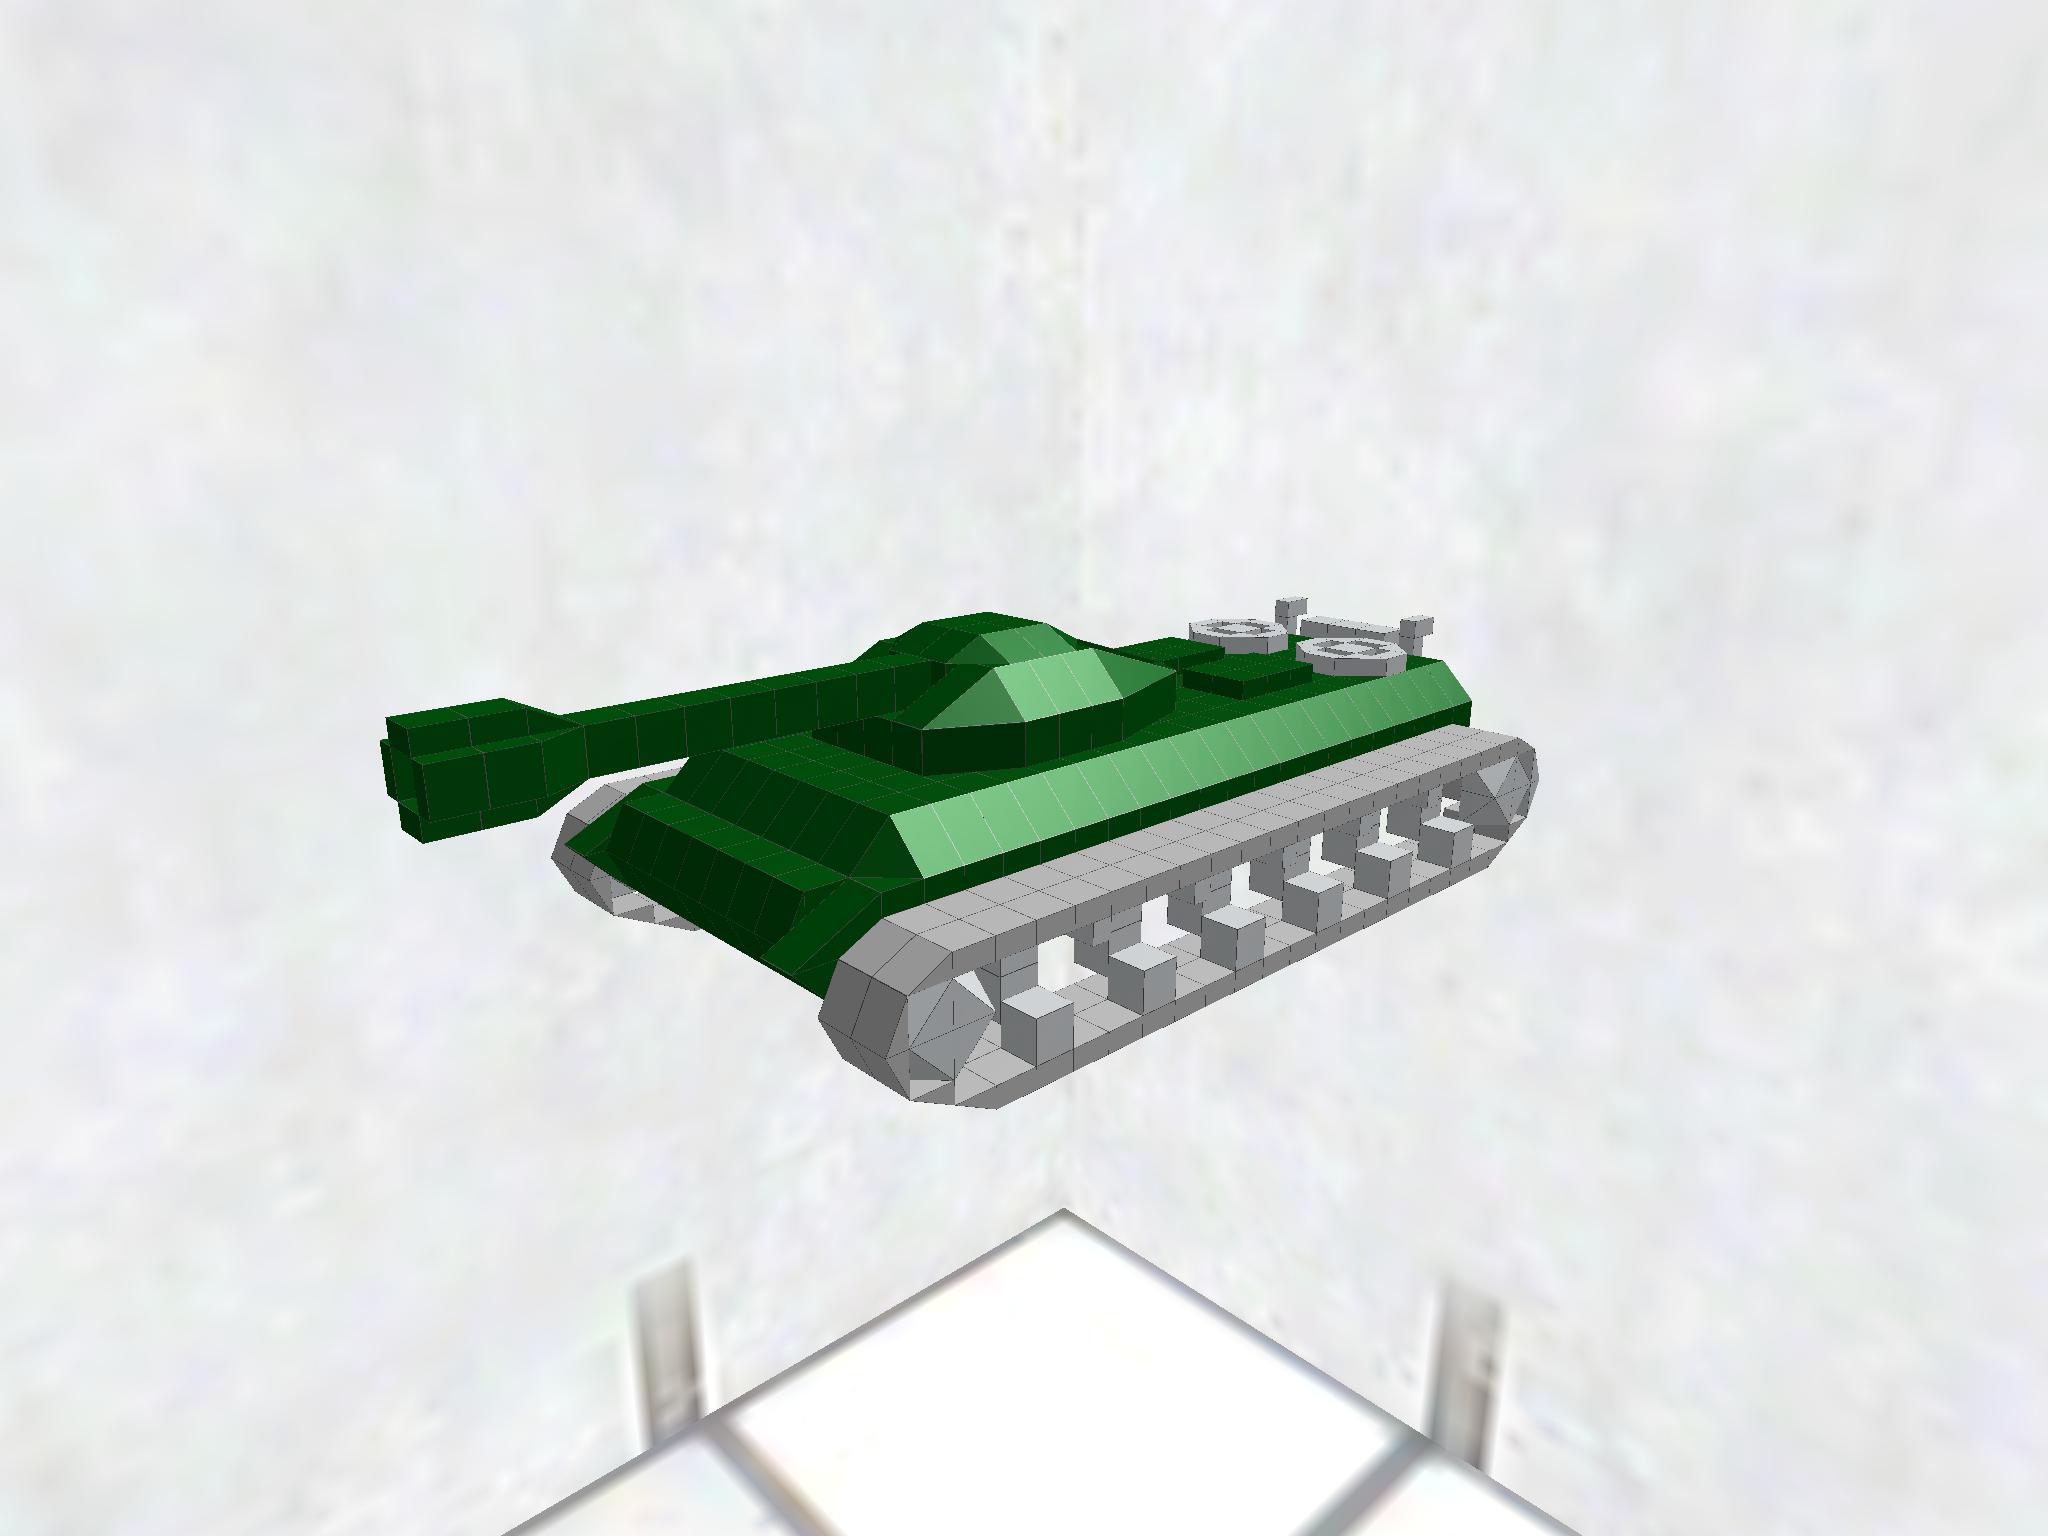 架空戦車 Fictional tank